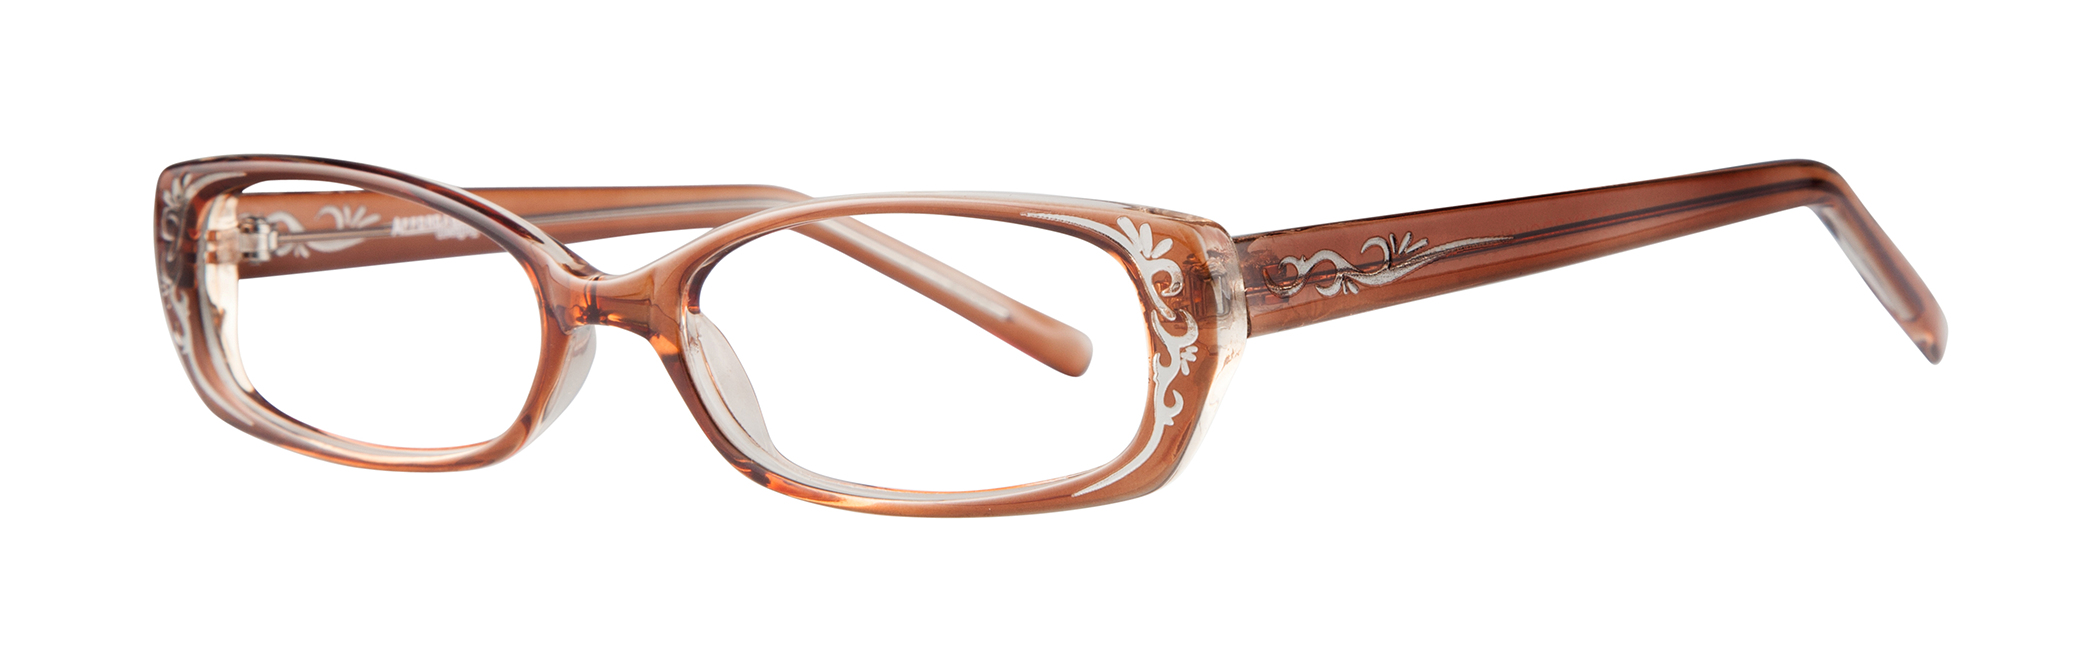 Picture of Affordable Designs Eyeglasses Lindsay